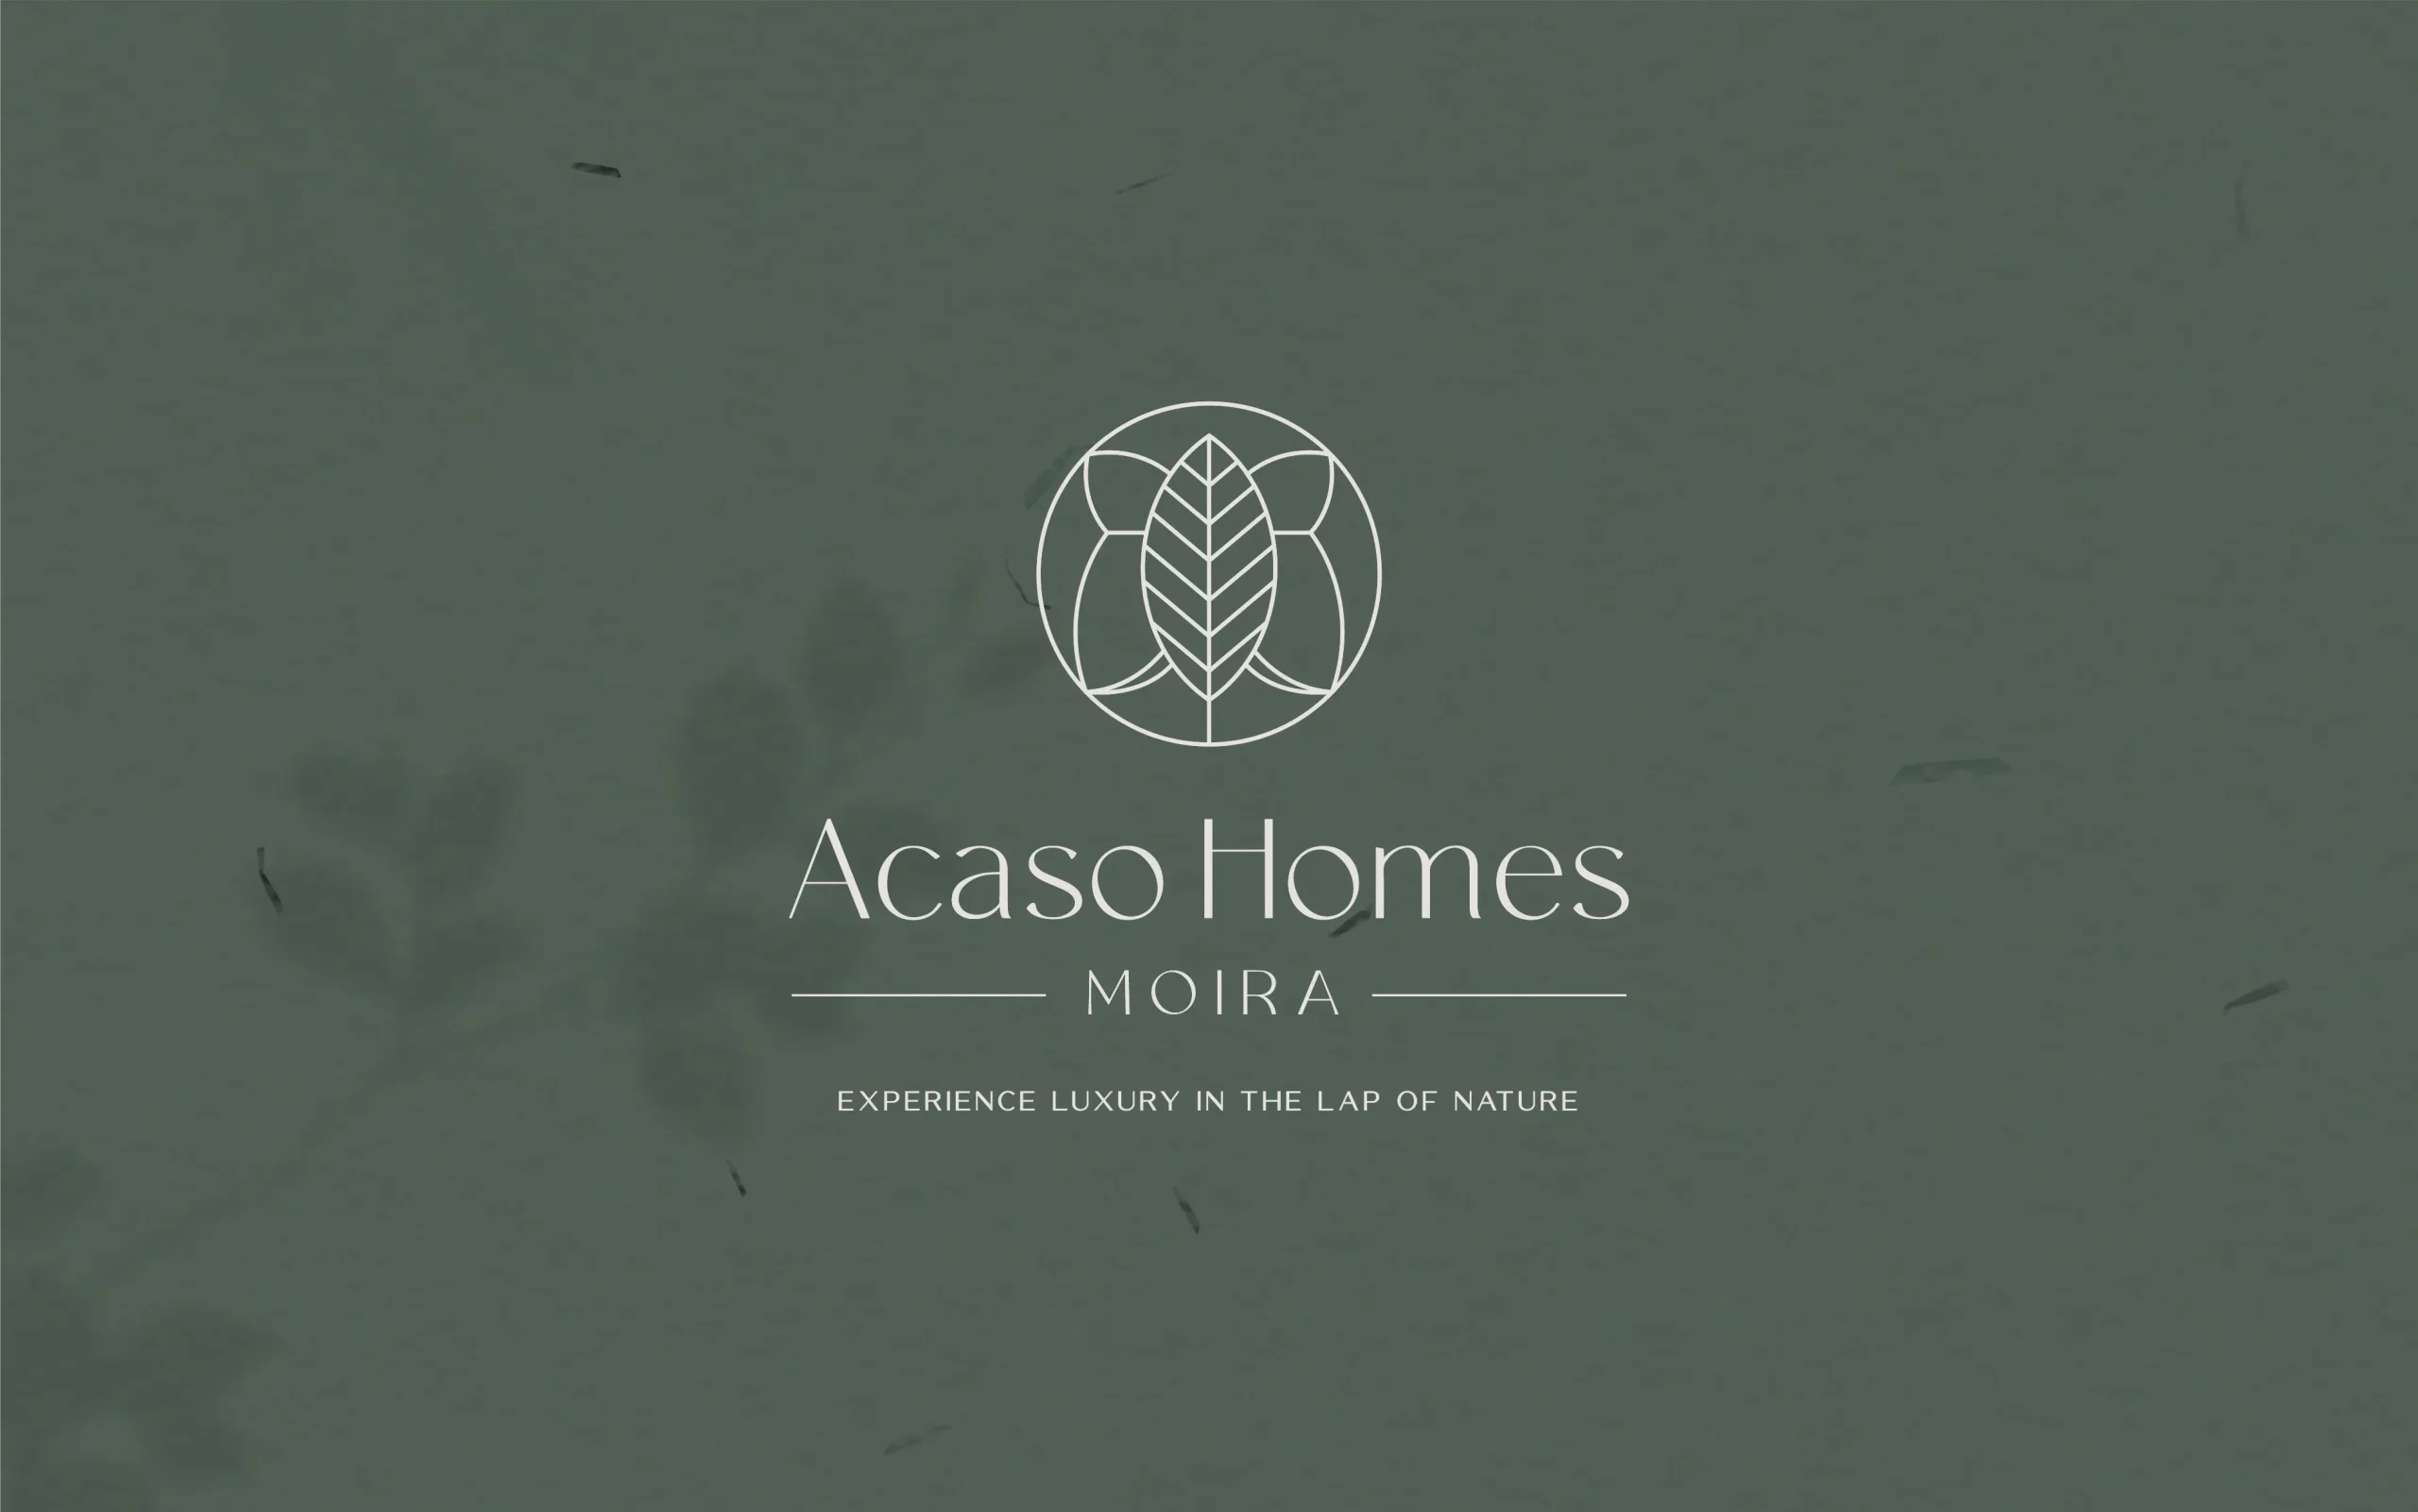 The logo for acso homes moria.